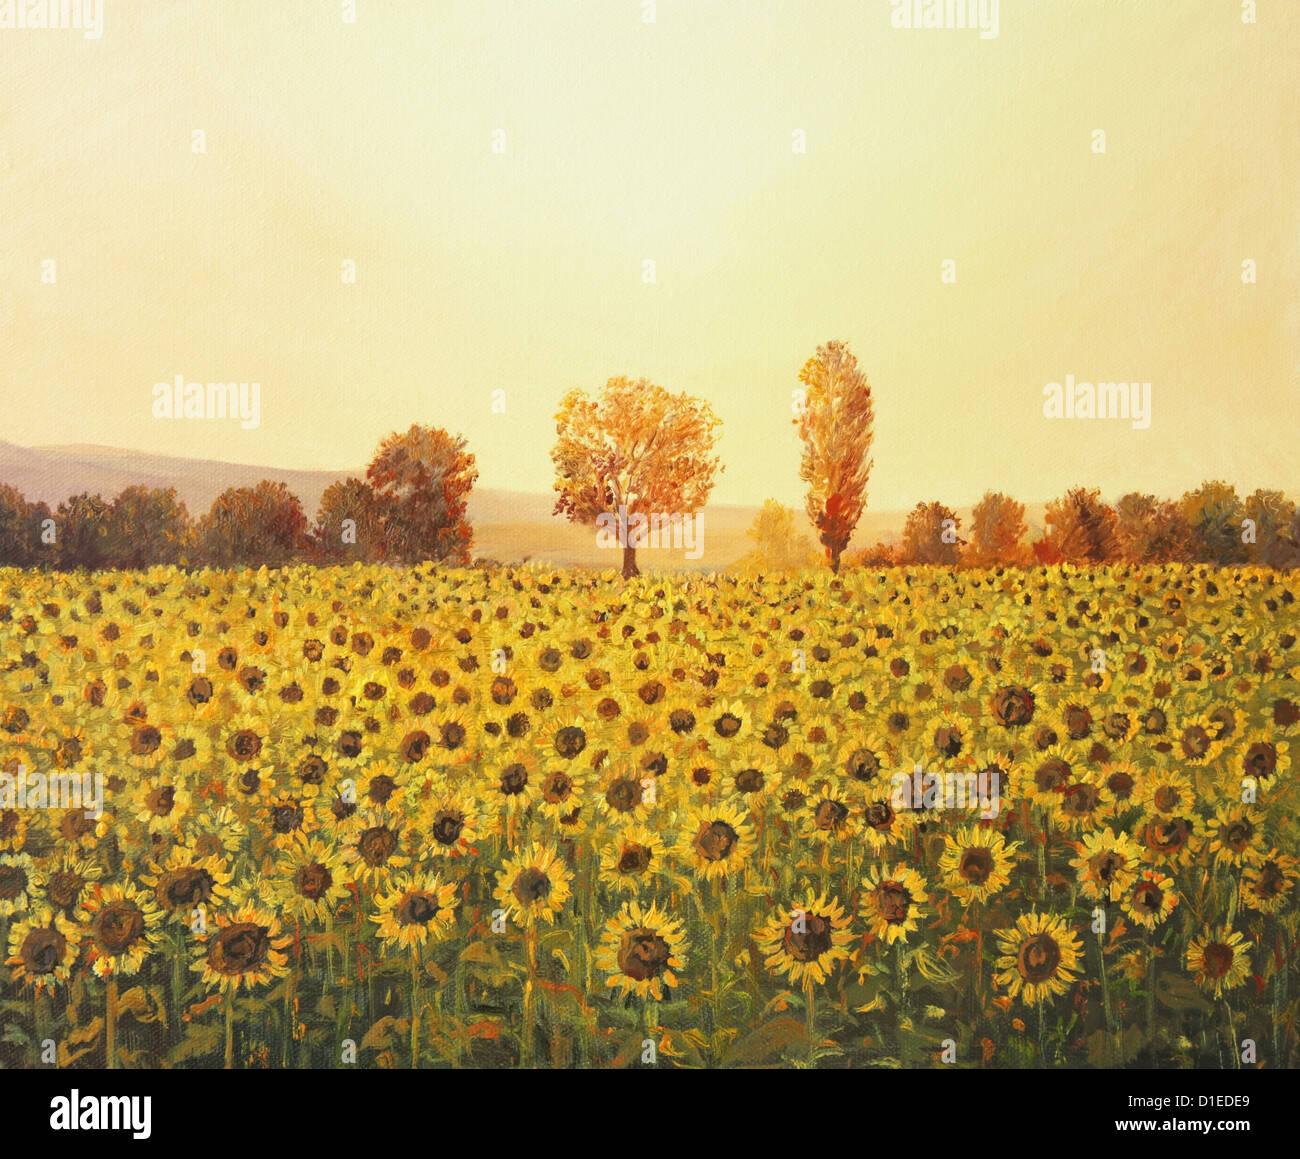 Une peinture à l'huile sur toile d'un paysage rural coucher du soleil avec un champ de tournesol doré éclairé par la chaude lumière du soleil couchant. Banque D'Images